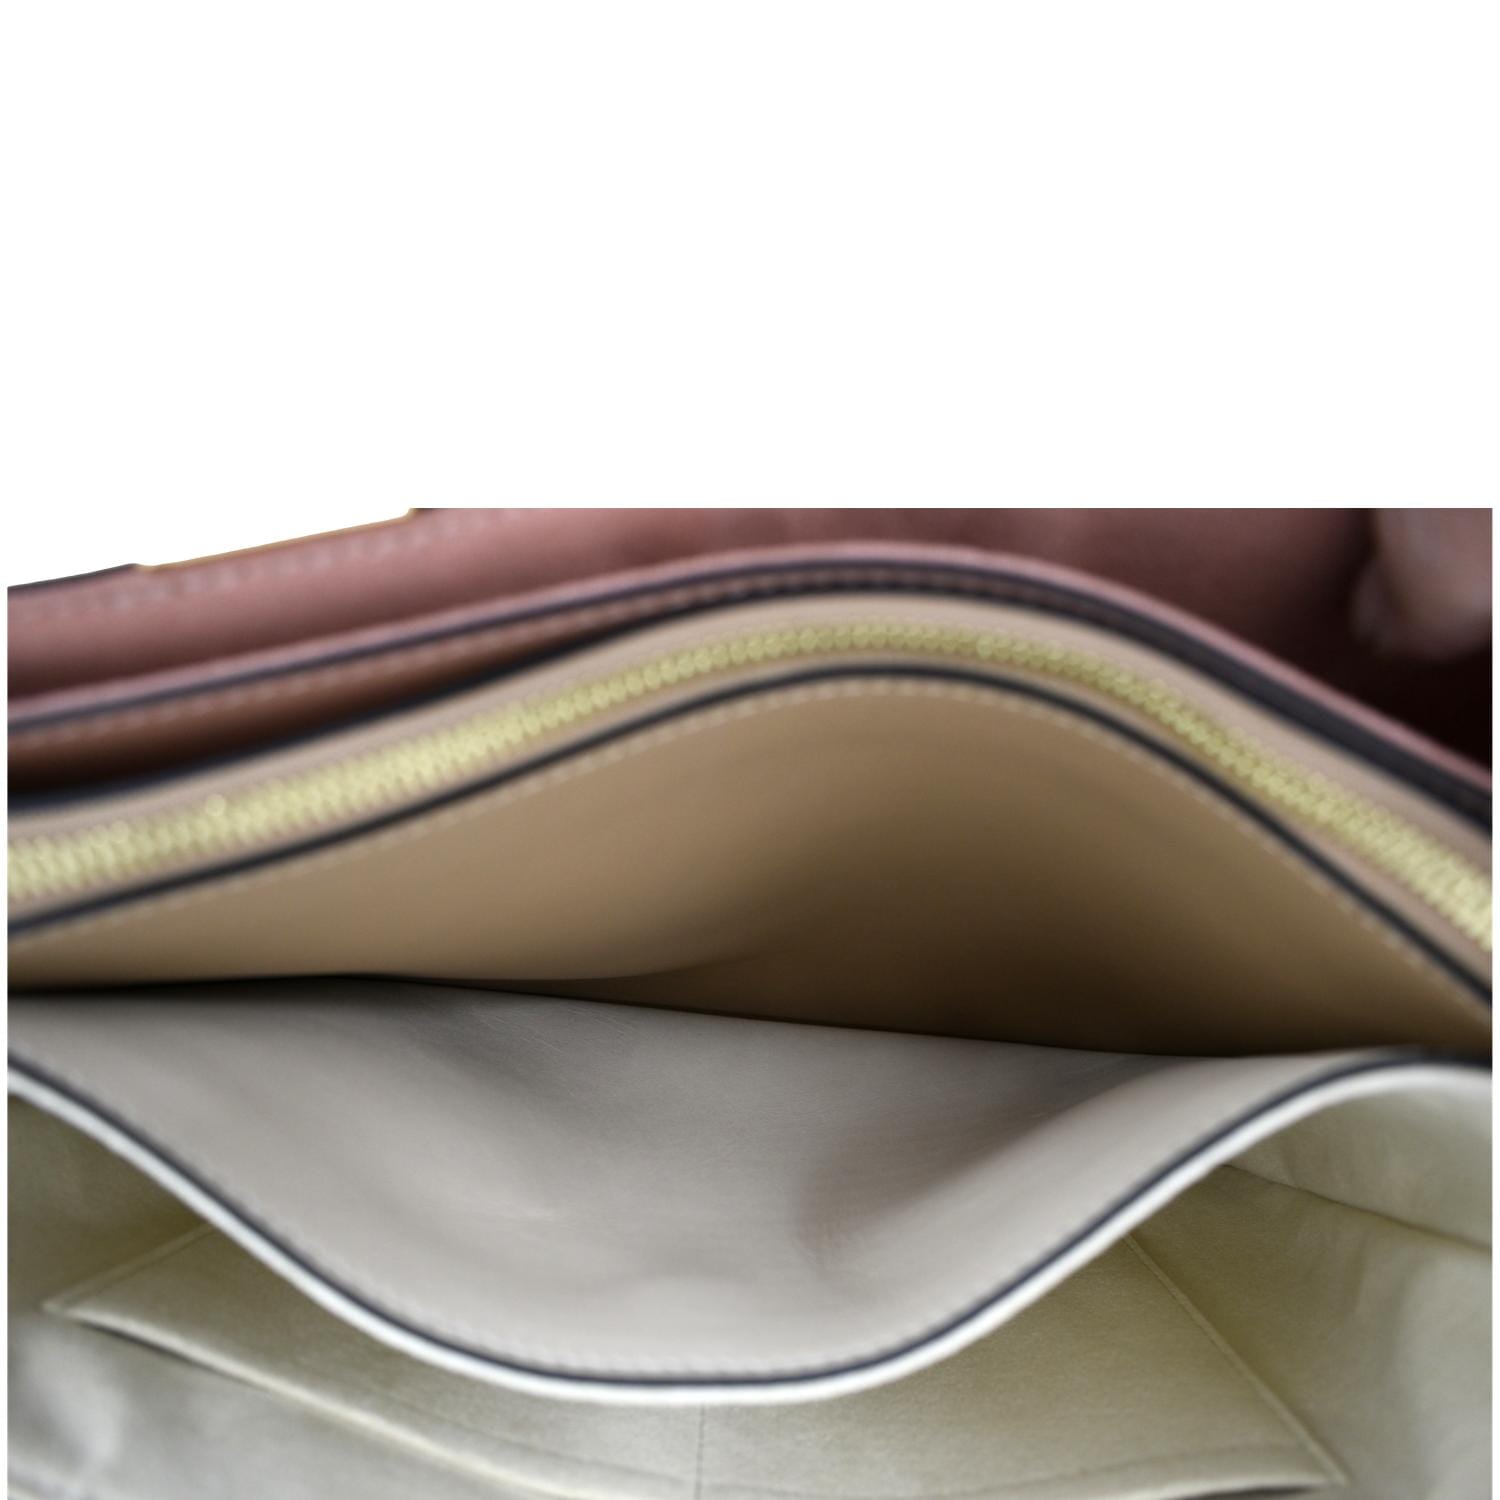 Louis Vuitton Millefeuille Handbag Monogram Canvas Leather Brown Pink Cream